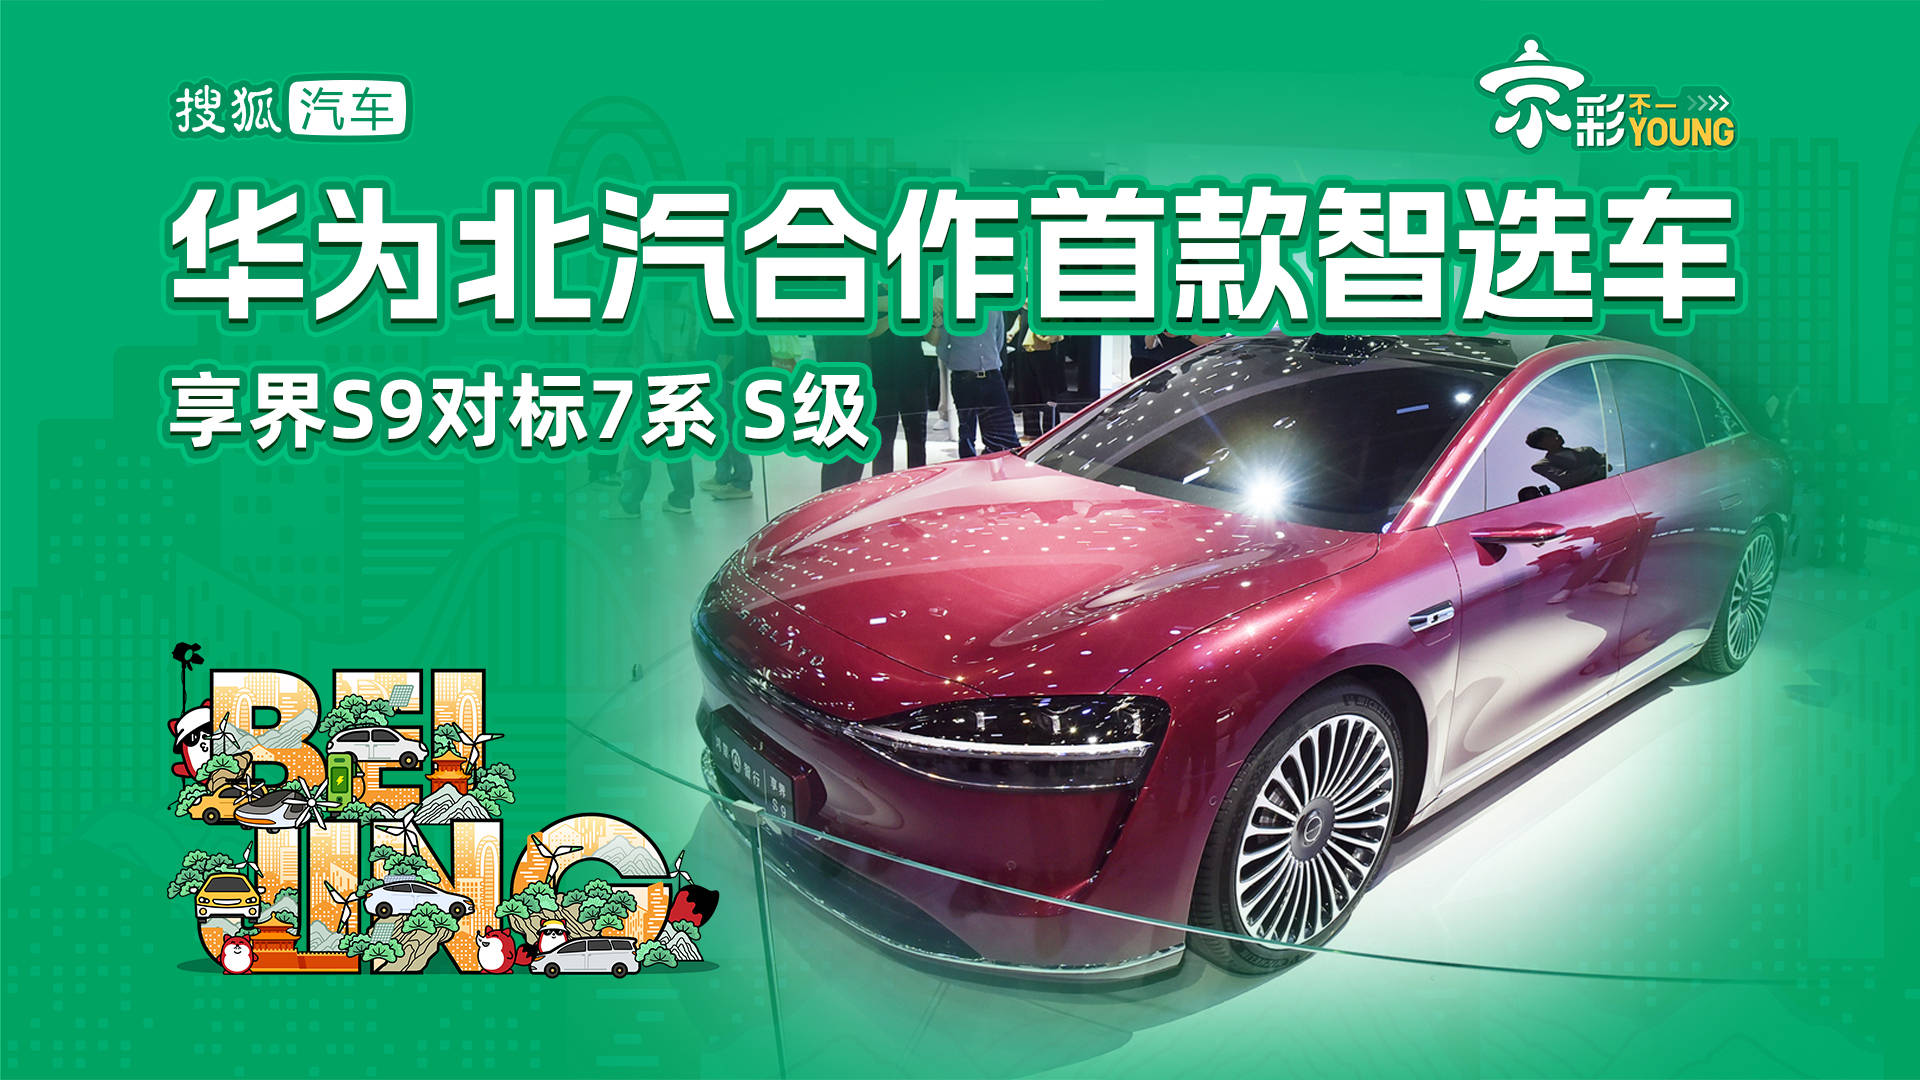 华为BAIC合作首款智能车畅享世界S9标杆7系S级_搜狐汽车_ Sohu.com。